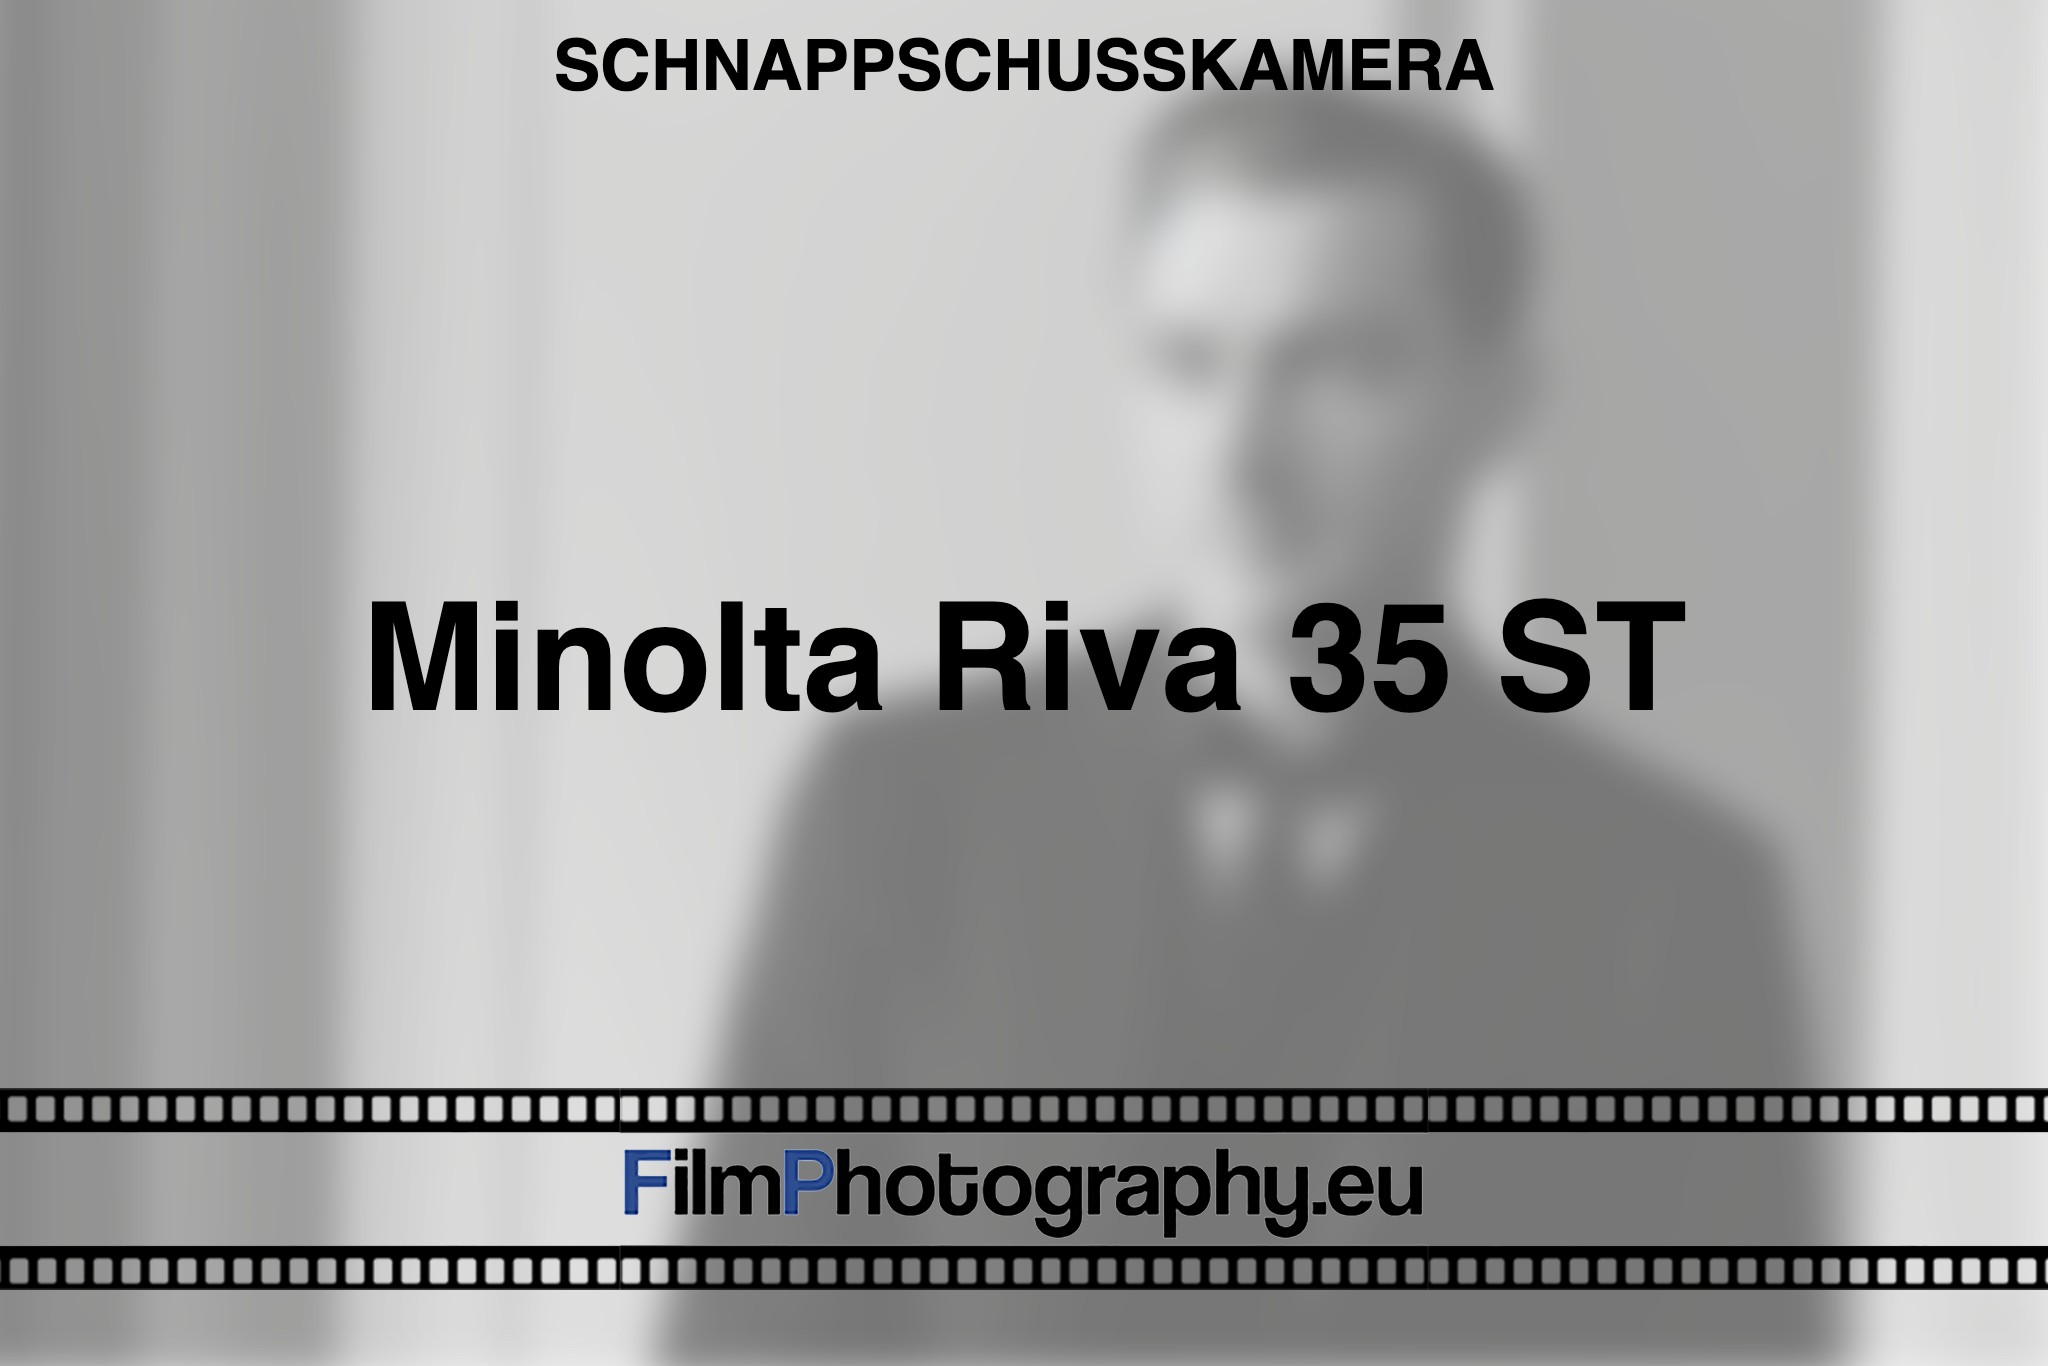 minolta-riva-35-st-schnappschusskamera-bnv